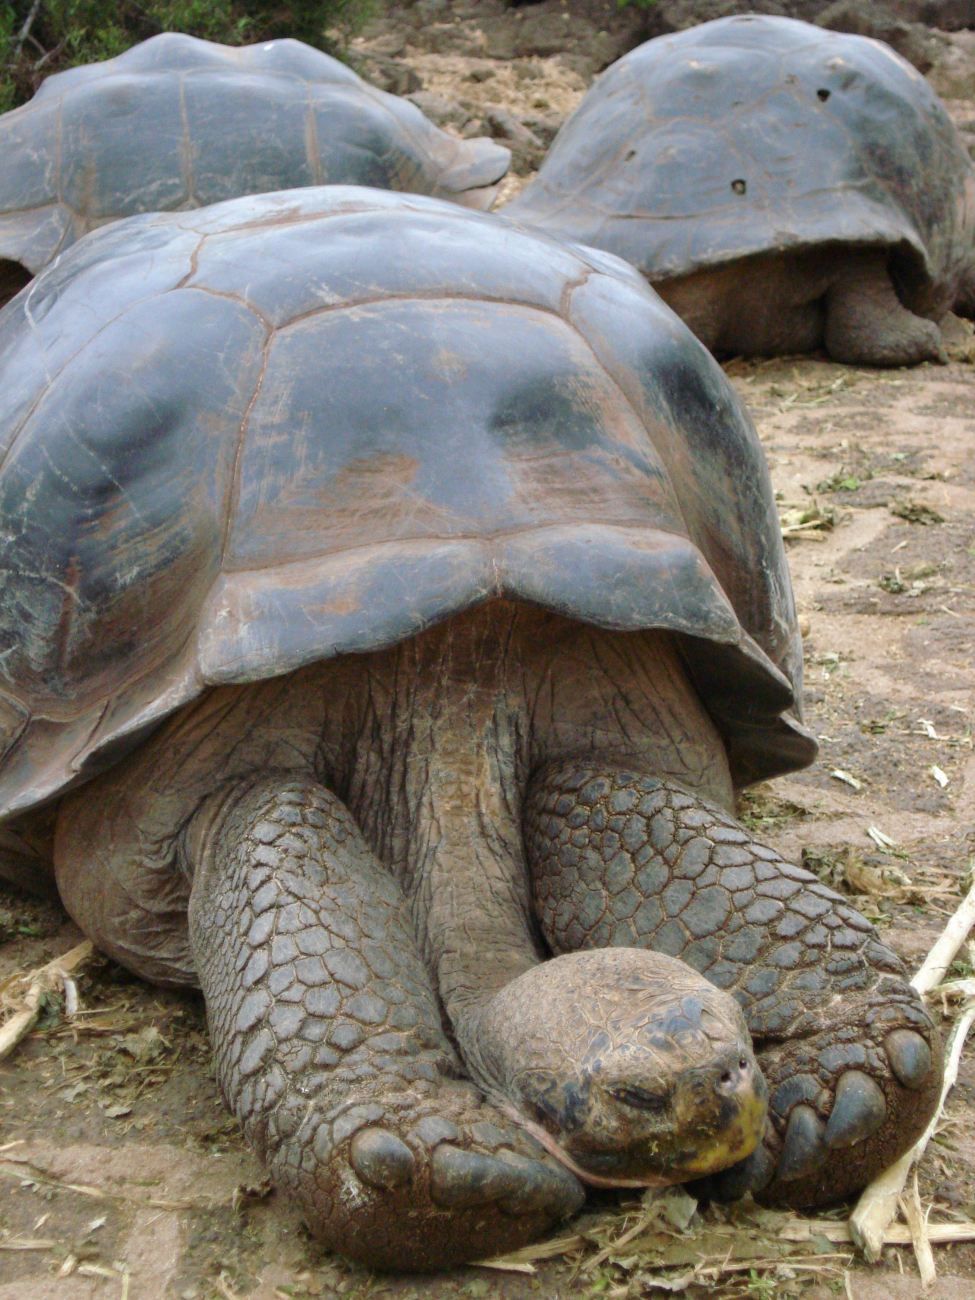 Galapagos Tortoise displaying long serpentine neck